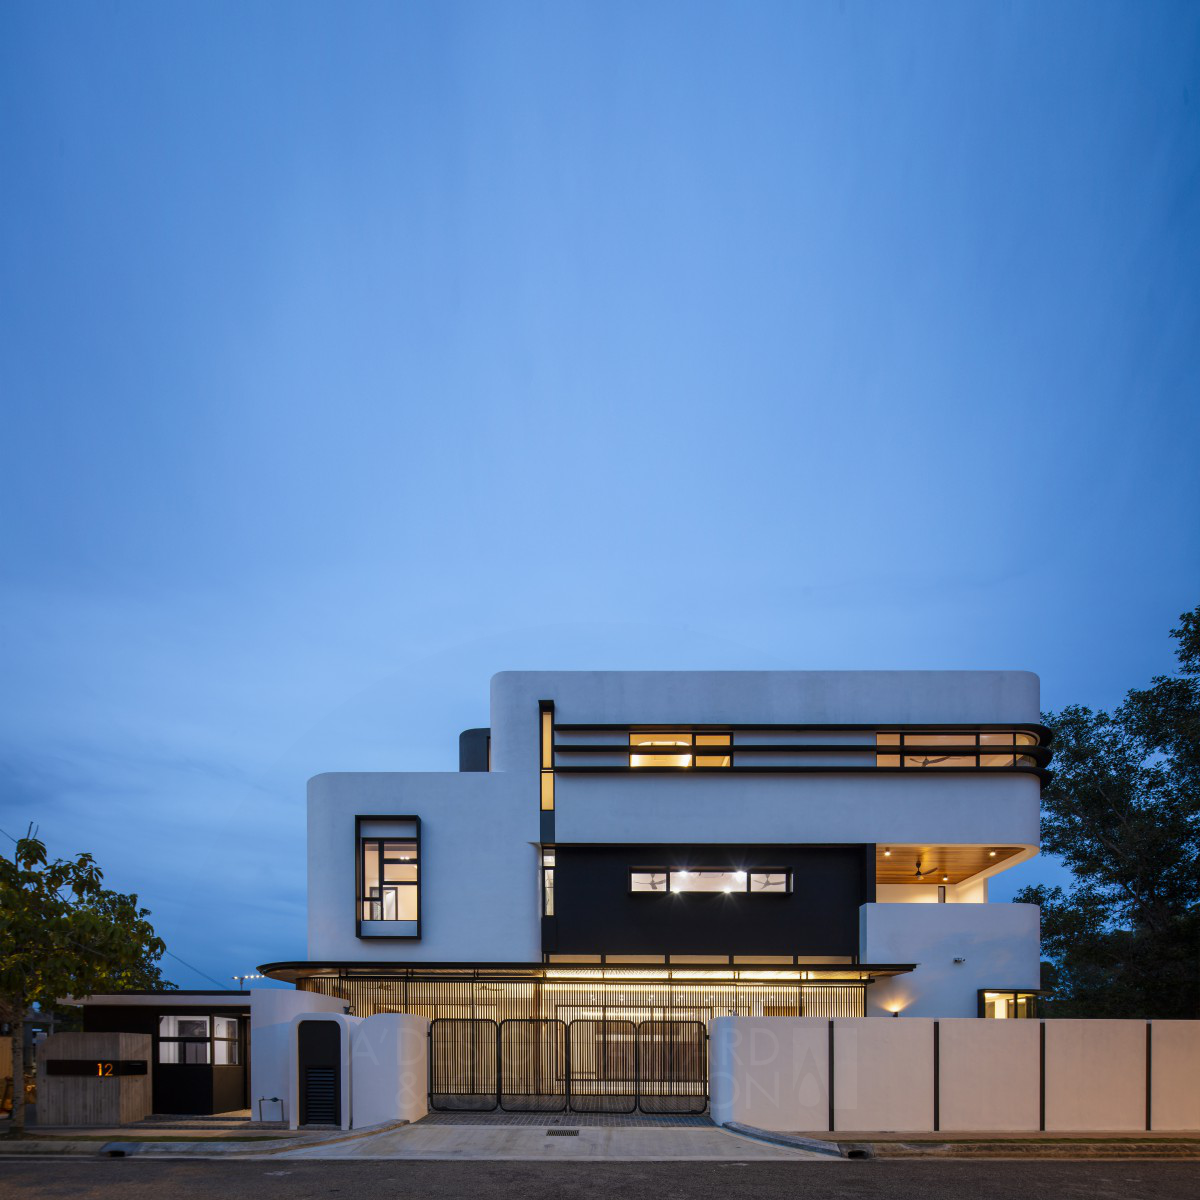 极简主义与热带风情的完美融合：Kee Yen Lim设计的“Fillet House”